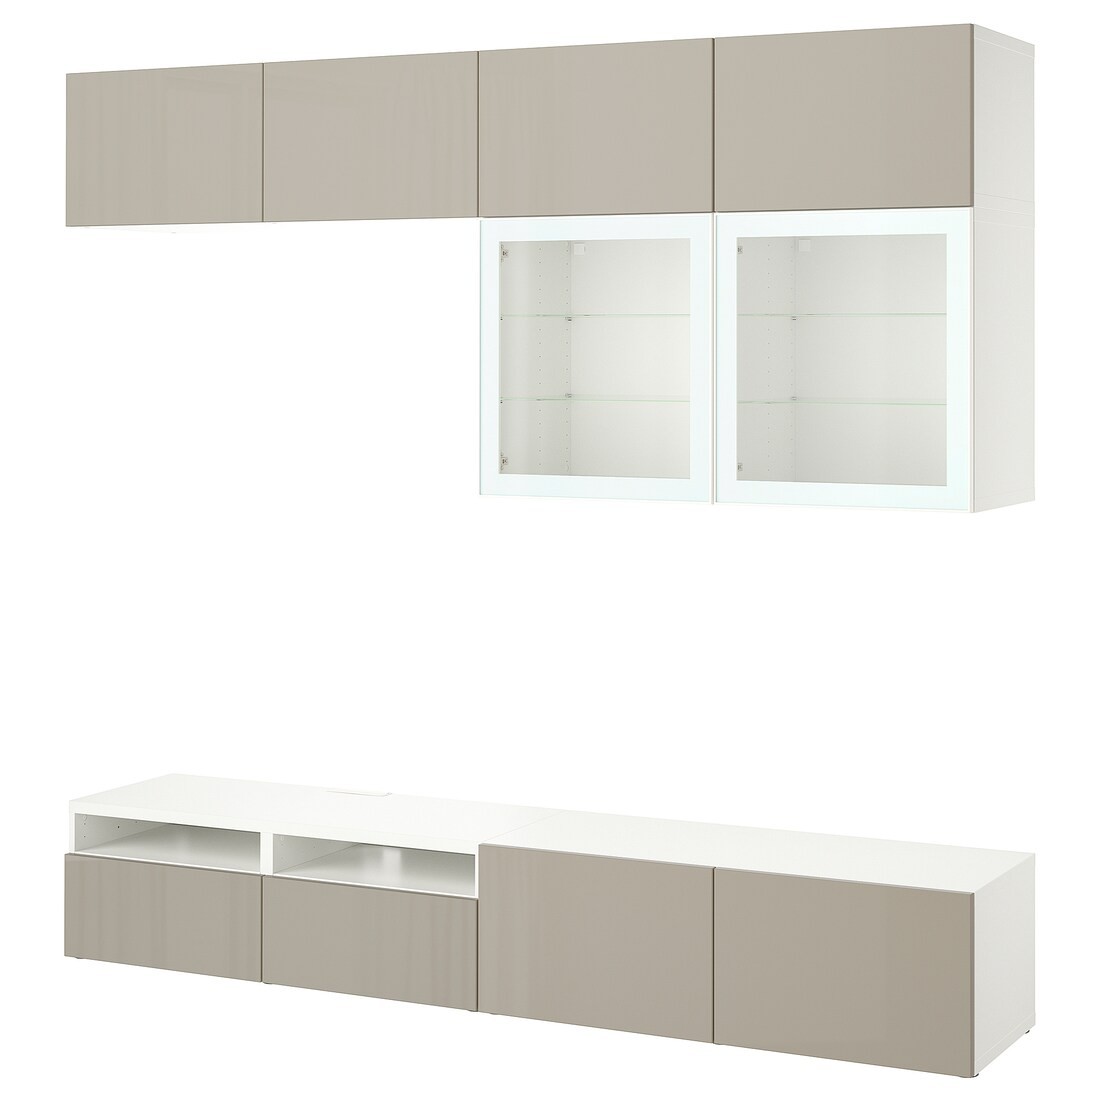 IKEA BESTÅ БЕСТО Комбинация для ТВ / стеклянные двери, белый / Selsviken глянцевый / бежевый матовое стекло, 240x42x231 см 49488810 | 494.888.10